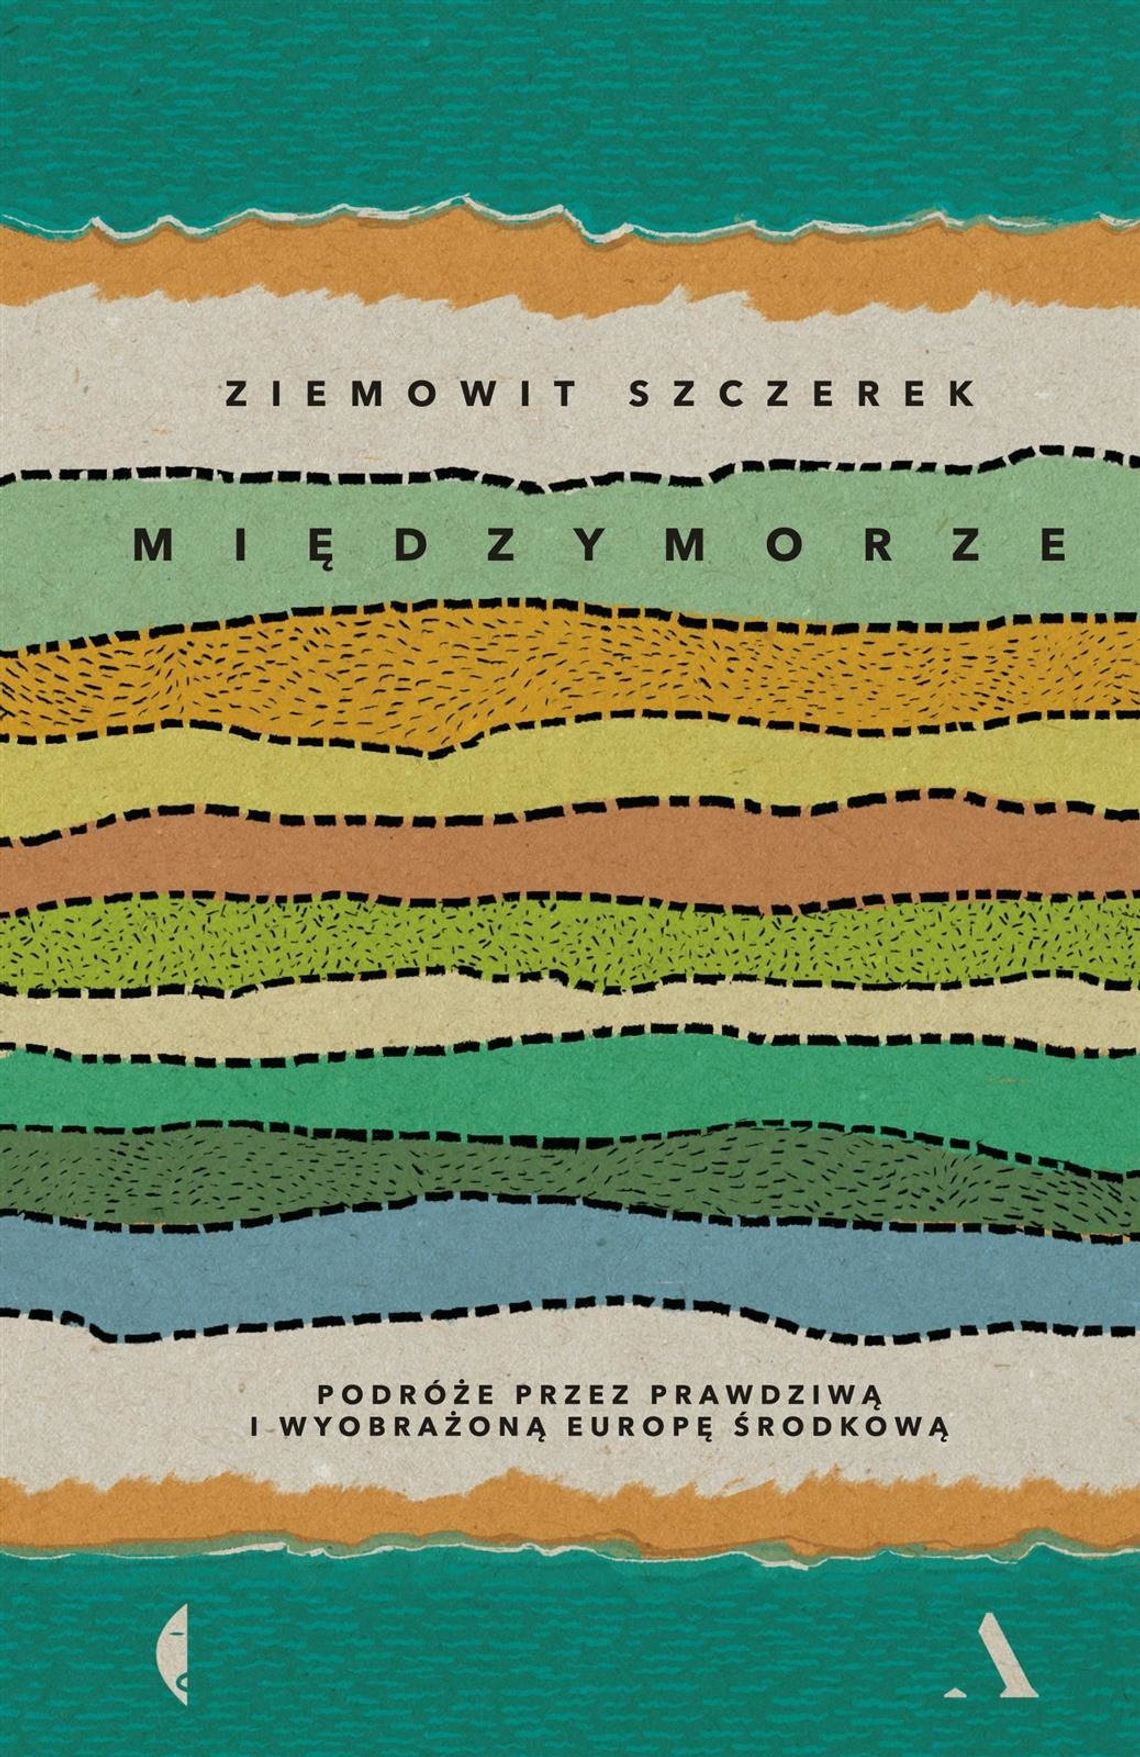 "Międzymorze" - Ziemowit Szczerek